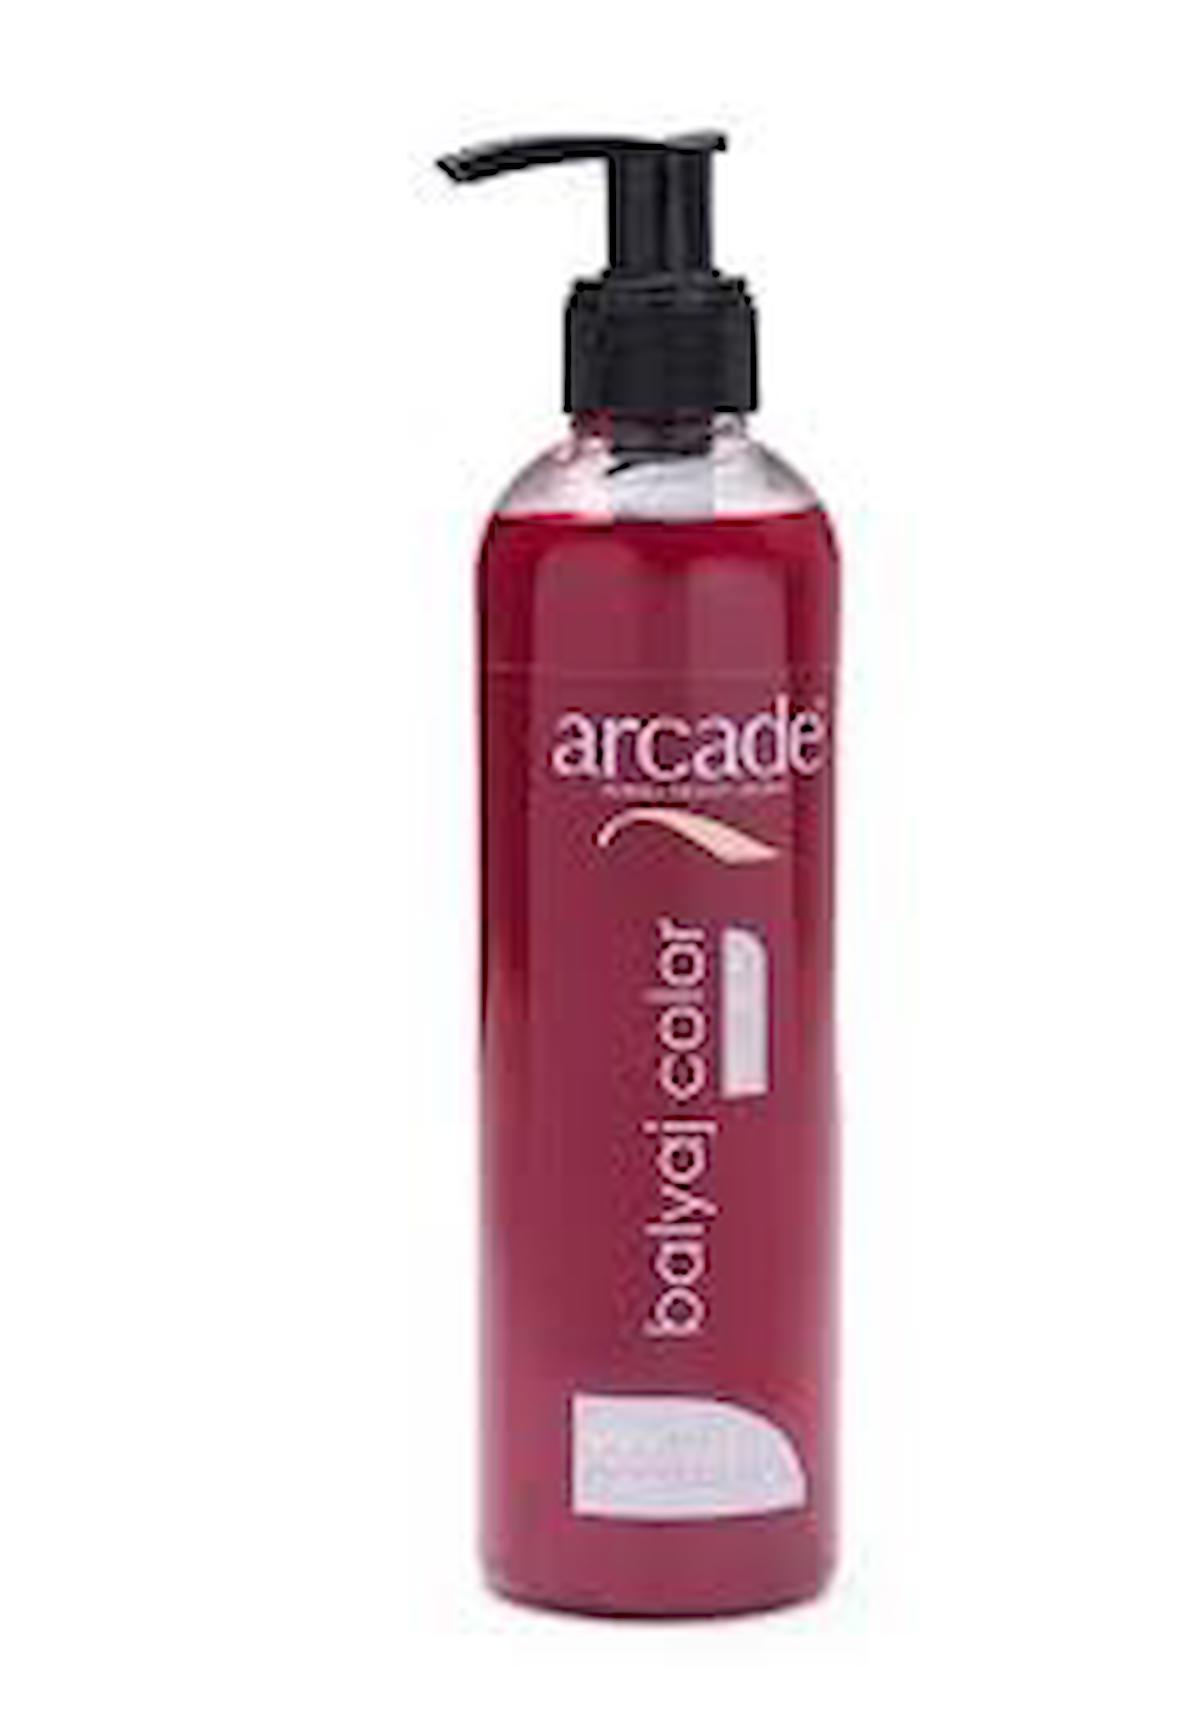 Arcade Kırmızı Amonyaksız Jel Saç Boyası 250 ml